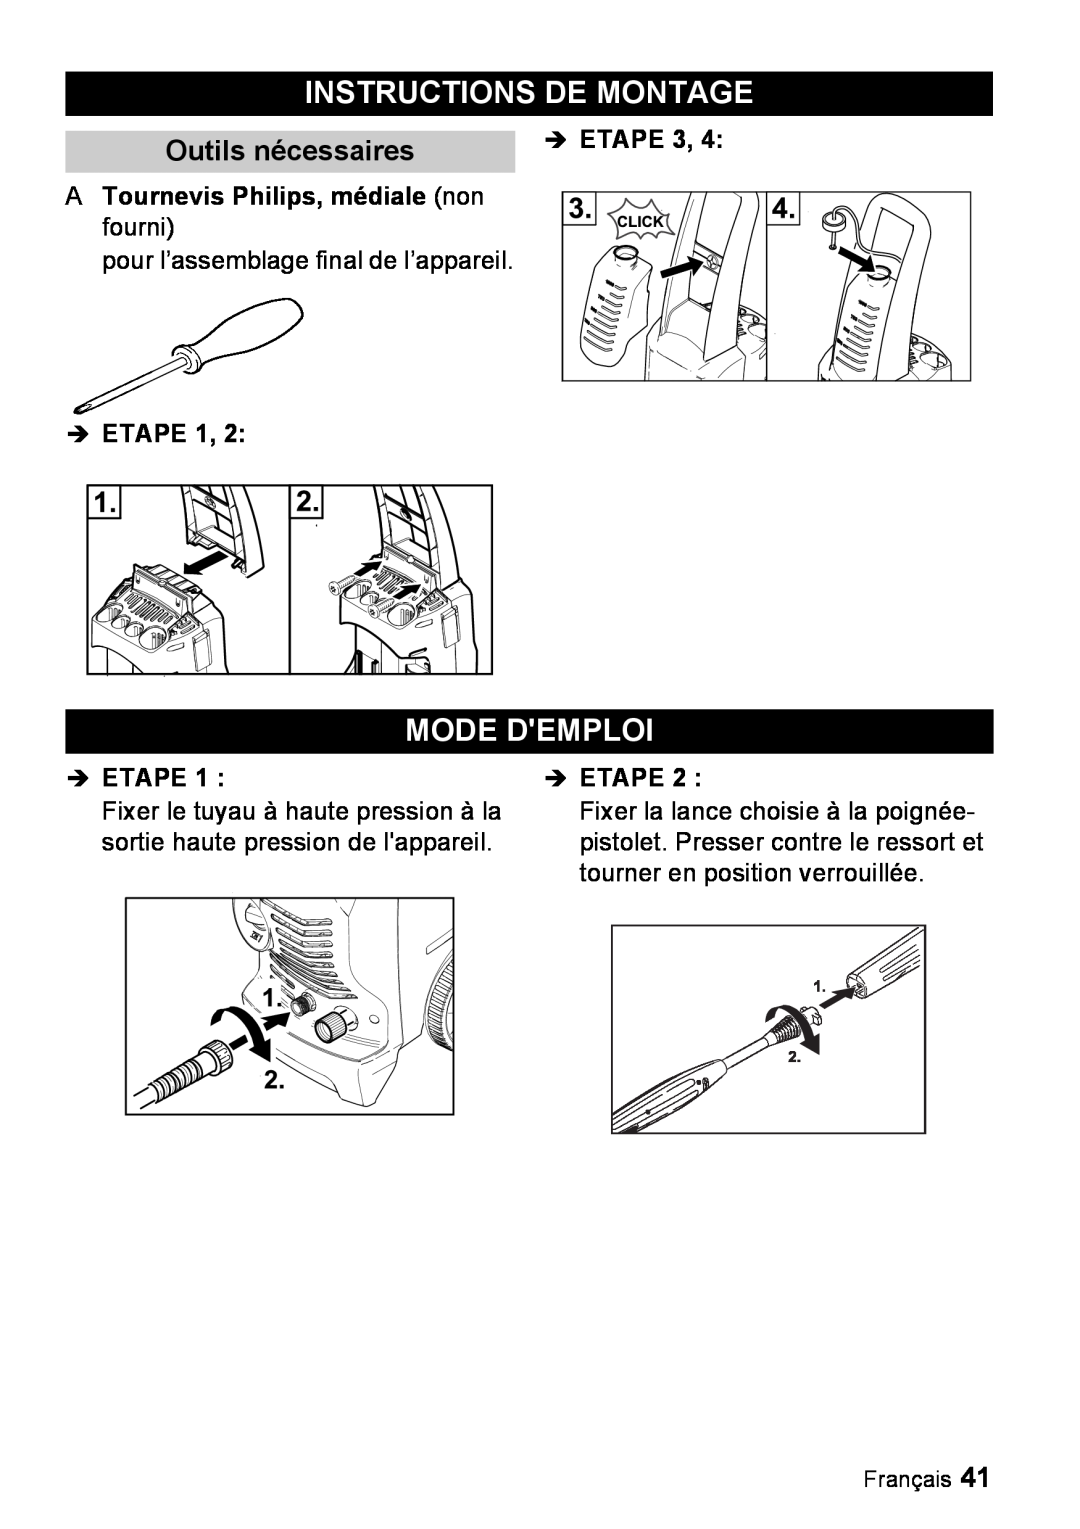 Karcher K 3.67 M manual Instructions De Montage, Mode Demploi, Outils nécessaires, A Tournevis Philips, médiale non fourni 